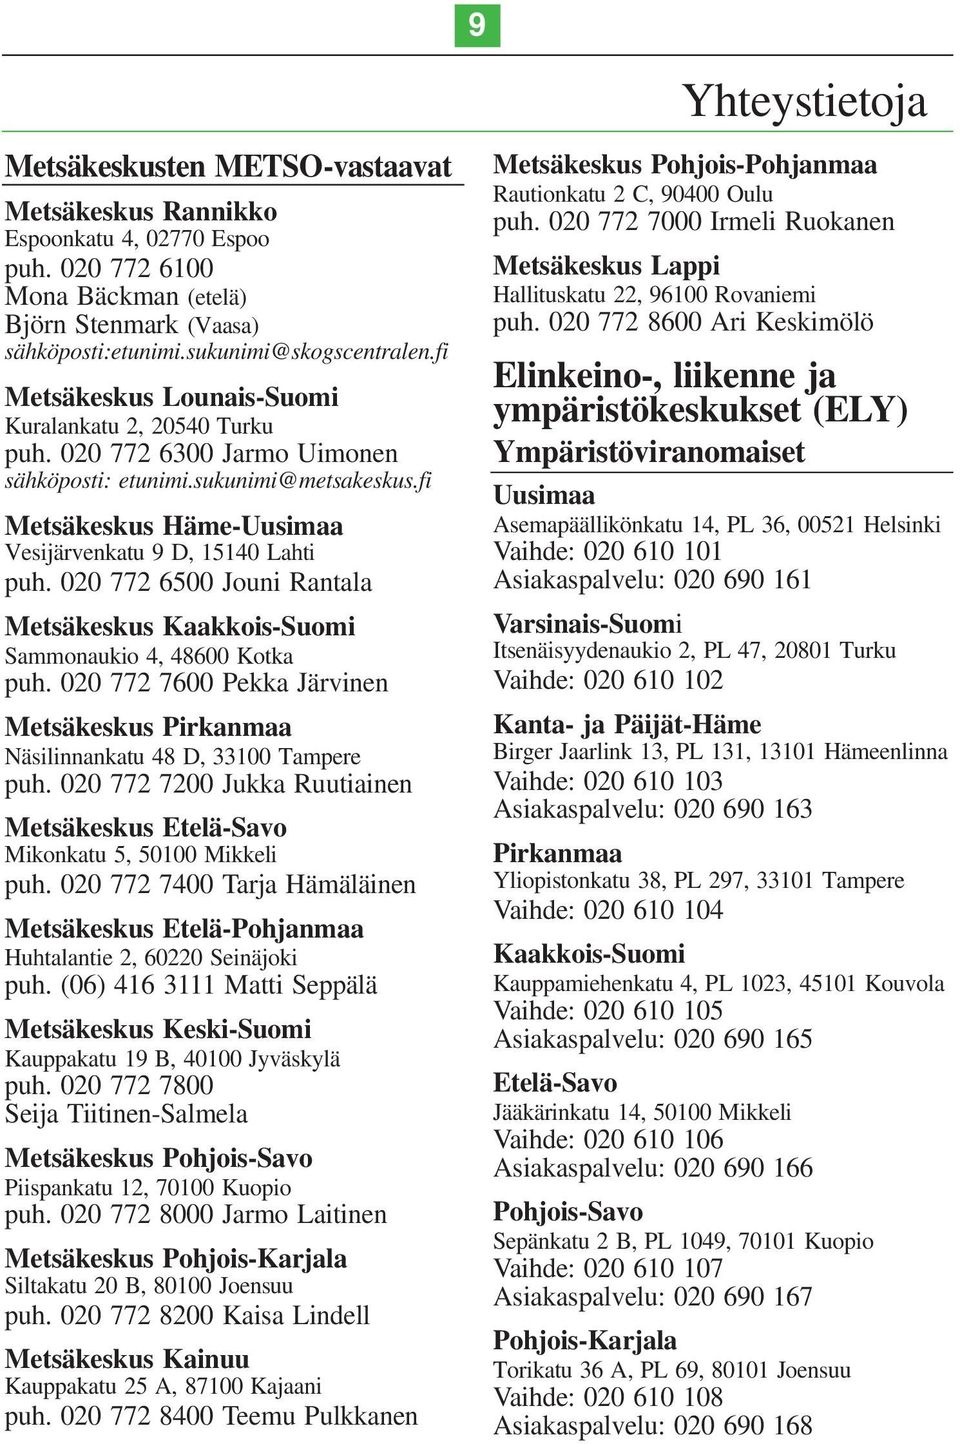 020 772 6500 Jouni Rantala Metsäkeskus Kaakkois-Suomi Sammonaukio 4, 48600 Kotka puh. 020 772 7600 Pekka Järvinen Metsäkeskus Pirkanmaa Näsilinnankatu 48 D, 33100 Tampere puh.